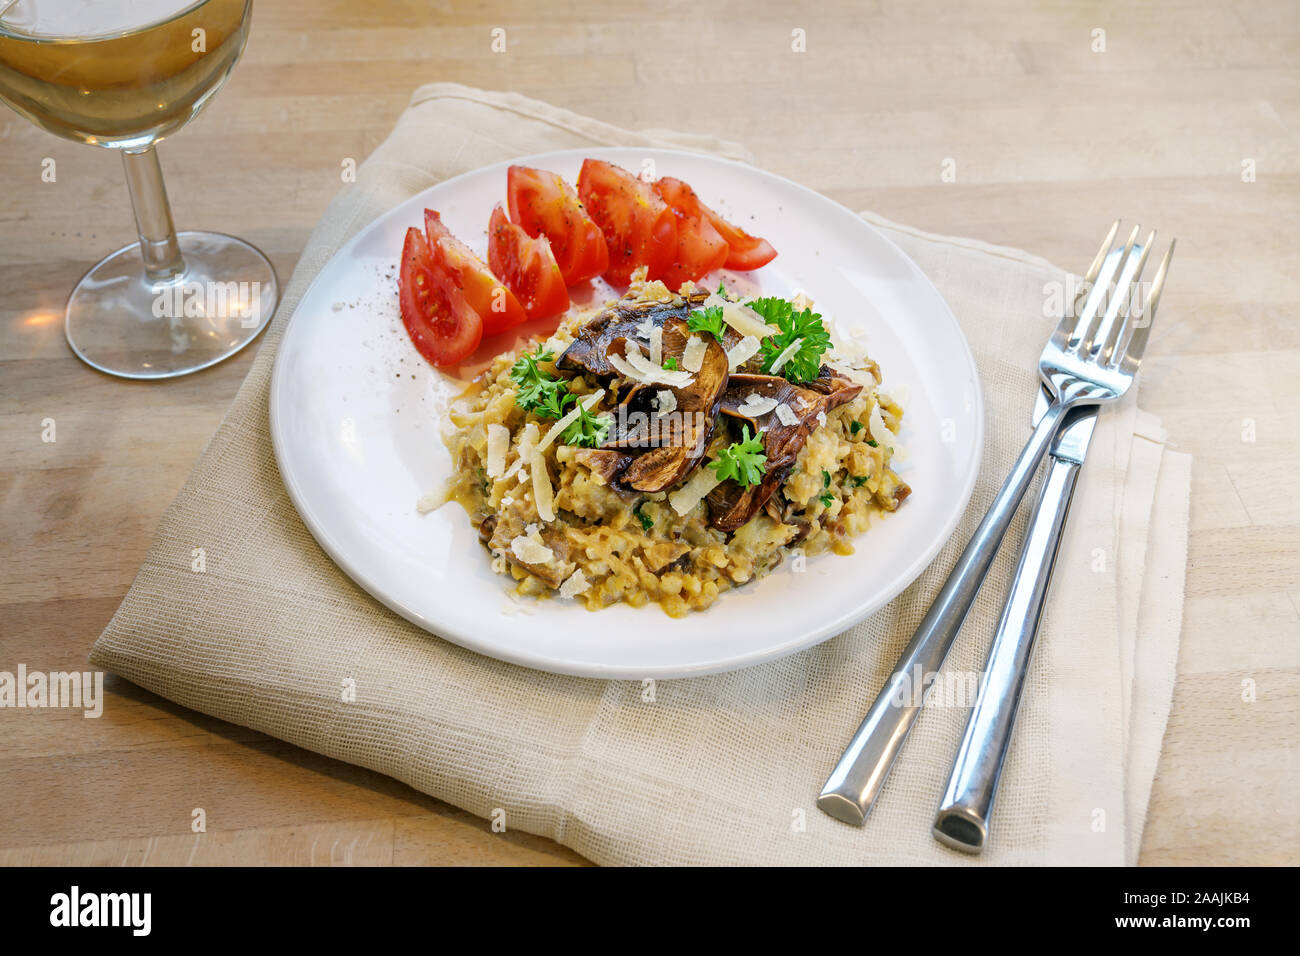 Low carb diet Meal, Risotto von Blumenkohl mit getrockneten Steinpilzen, mit Petersilie und Parmesan auf einer Platte auf einer hölzernen Tabl garniert Stockfoto